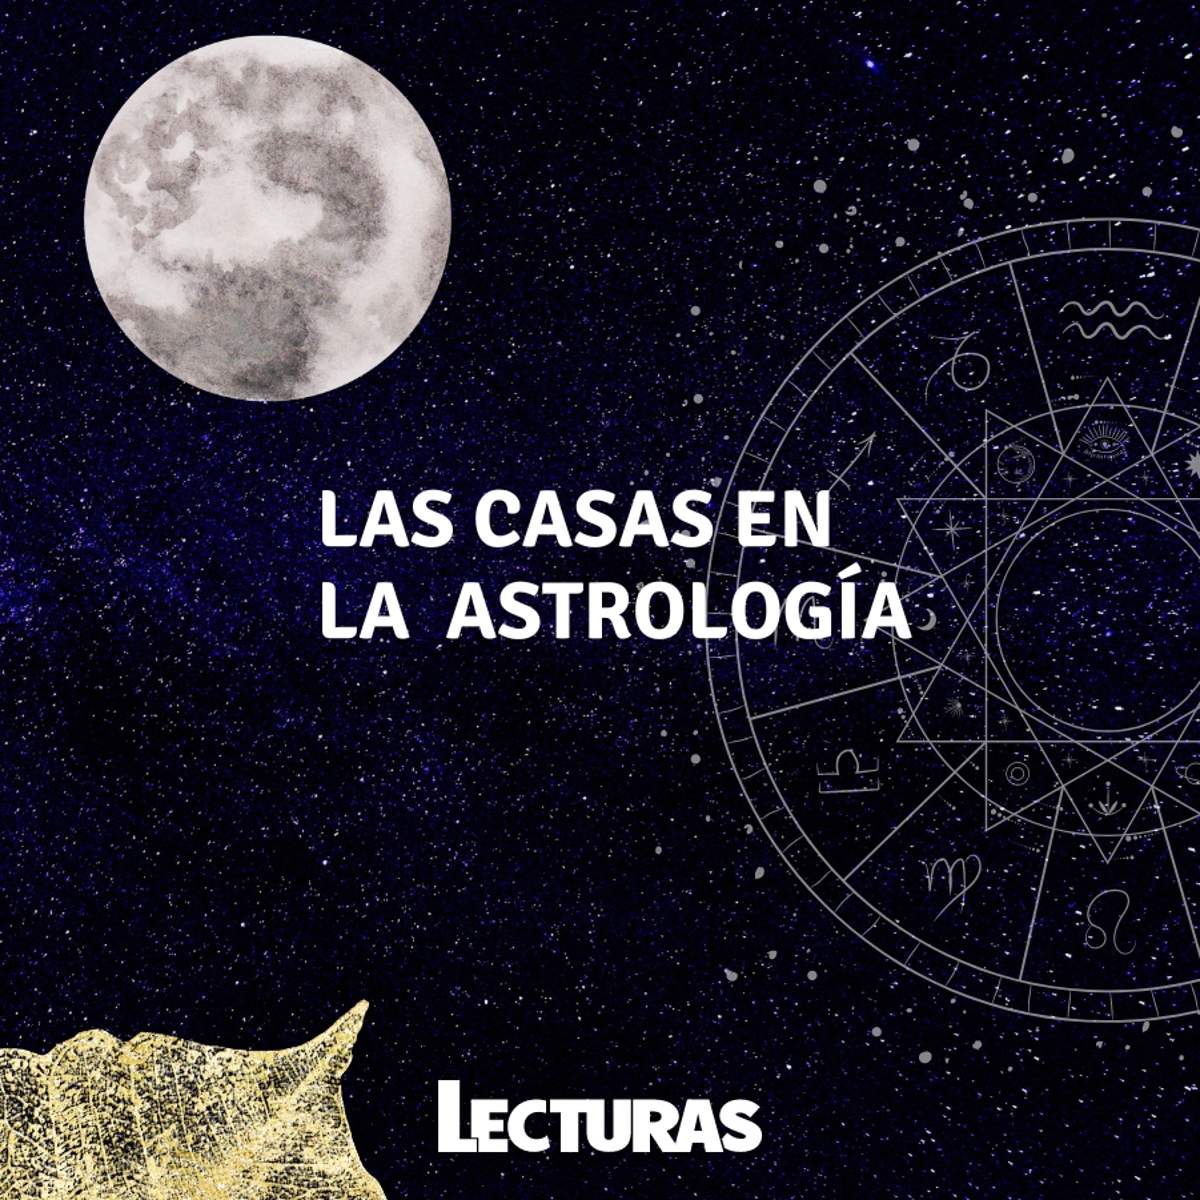 Las 12 Casas Astrológicas: ¿qué significan y qué dicen de ti en tu carta natal?